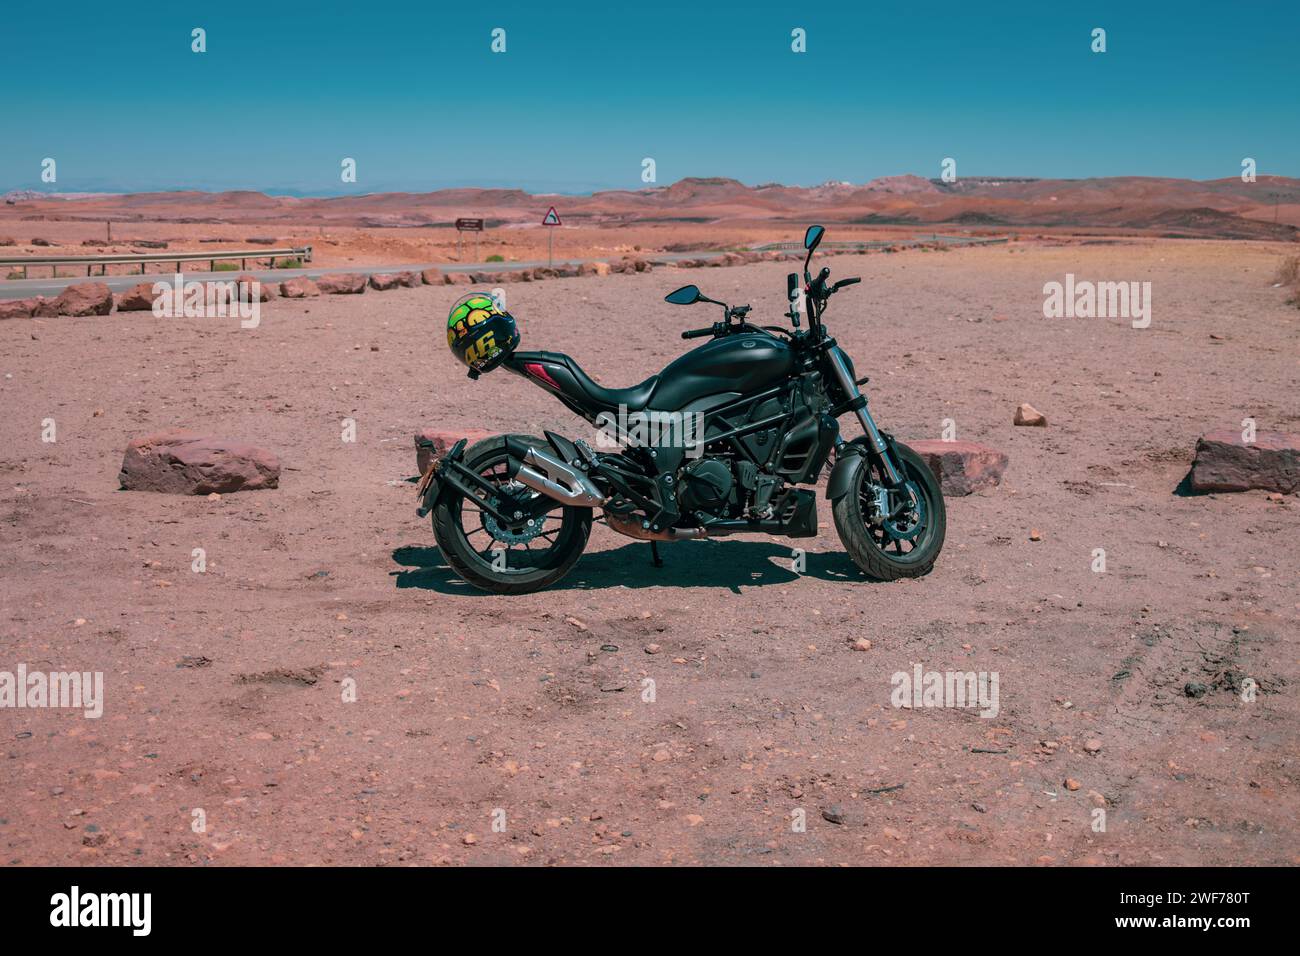 Une moto se dresse sur le terrain accidenté du cratère Ramon, invitant à un voyage aventureux à travers le paysage désertique d'Israël. Banque D'Images